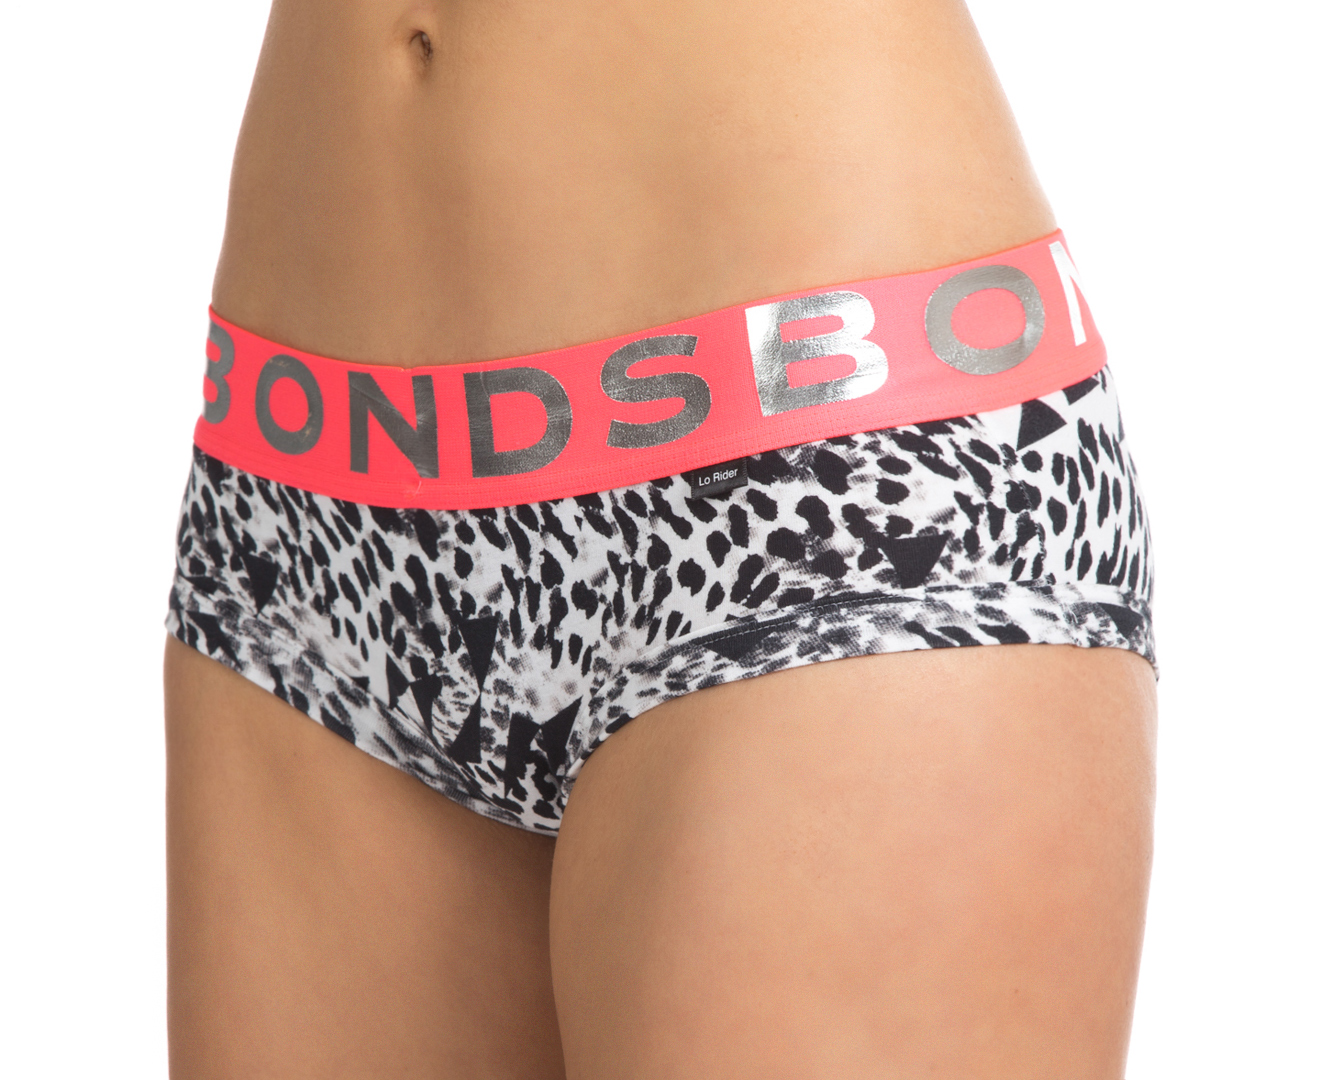 Bonds Wideband Lo Rider Brief - Leopard/Pink